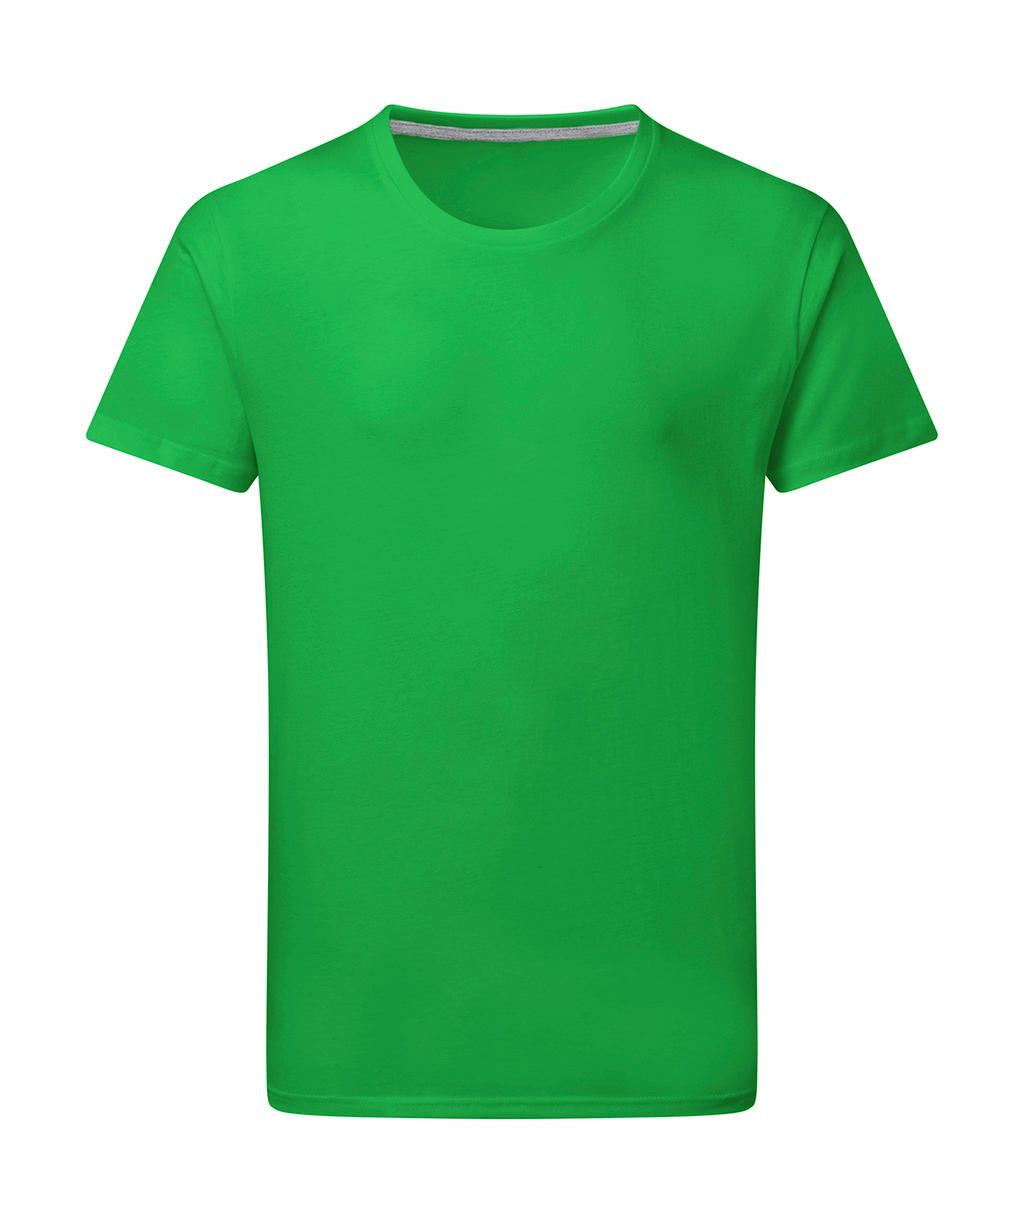 Dokonale potlačiteľné tričko bez štítku - kelly green